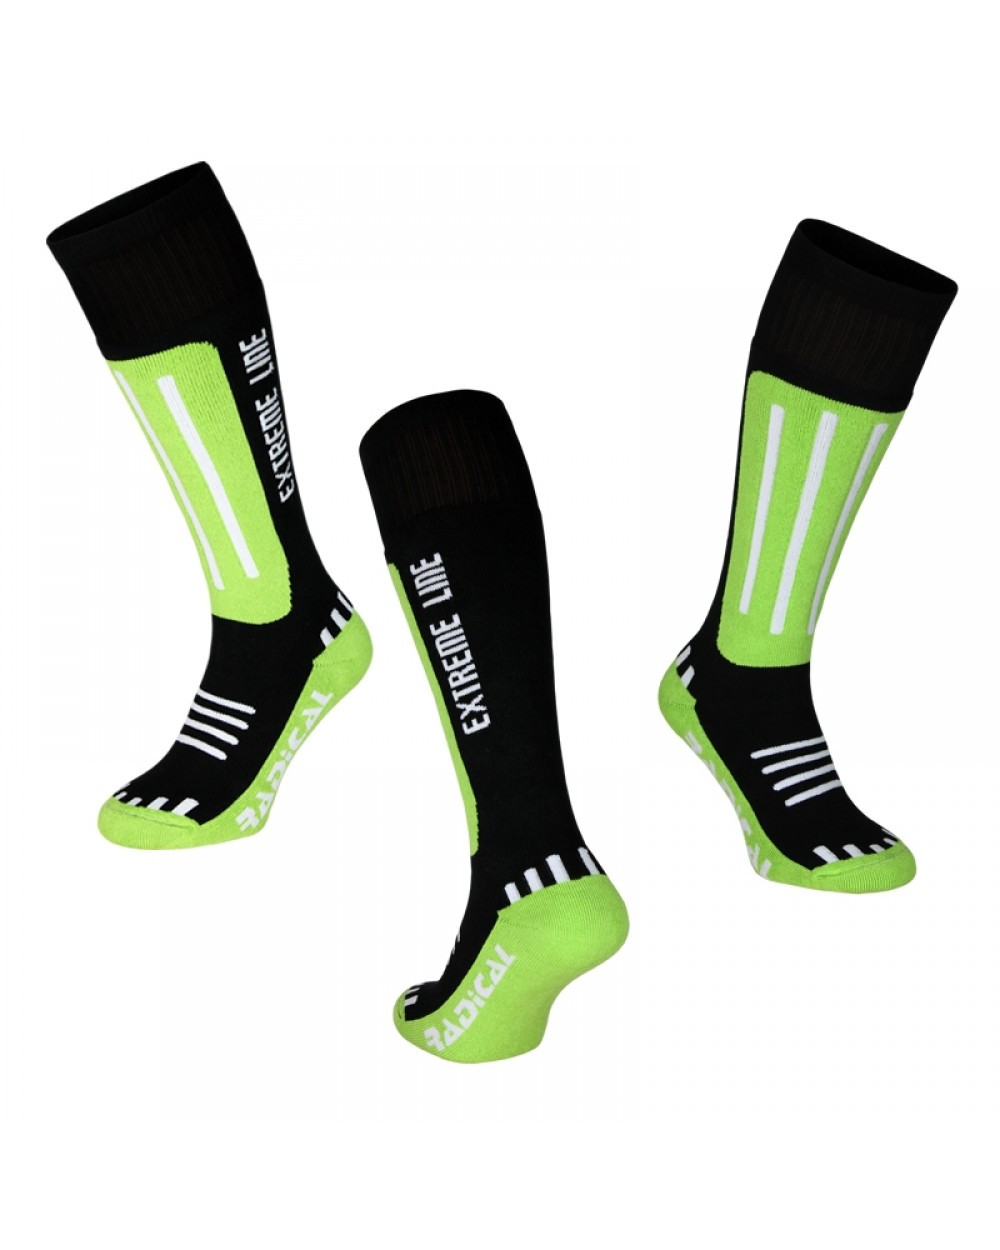 

Лыжные носки Rough Radical Extreme Line (original), зимние термоноски, для сноуборда, высокие теплые S (35-38), Зелёный